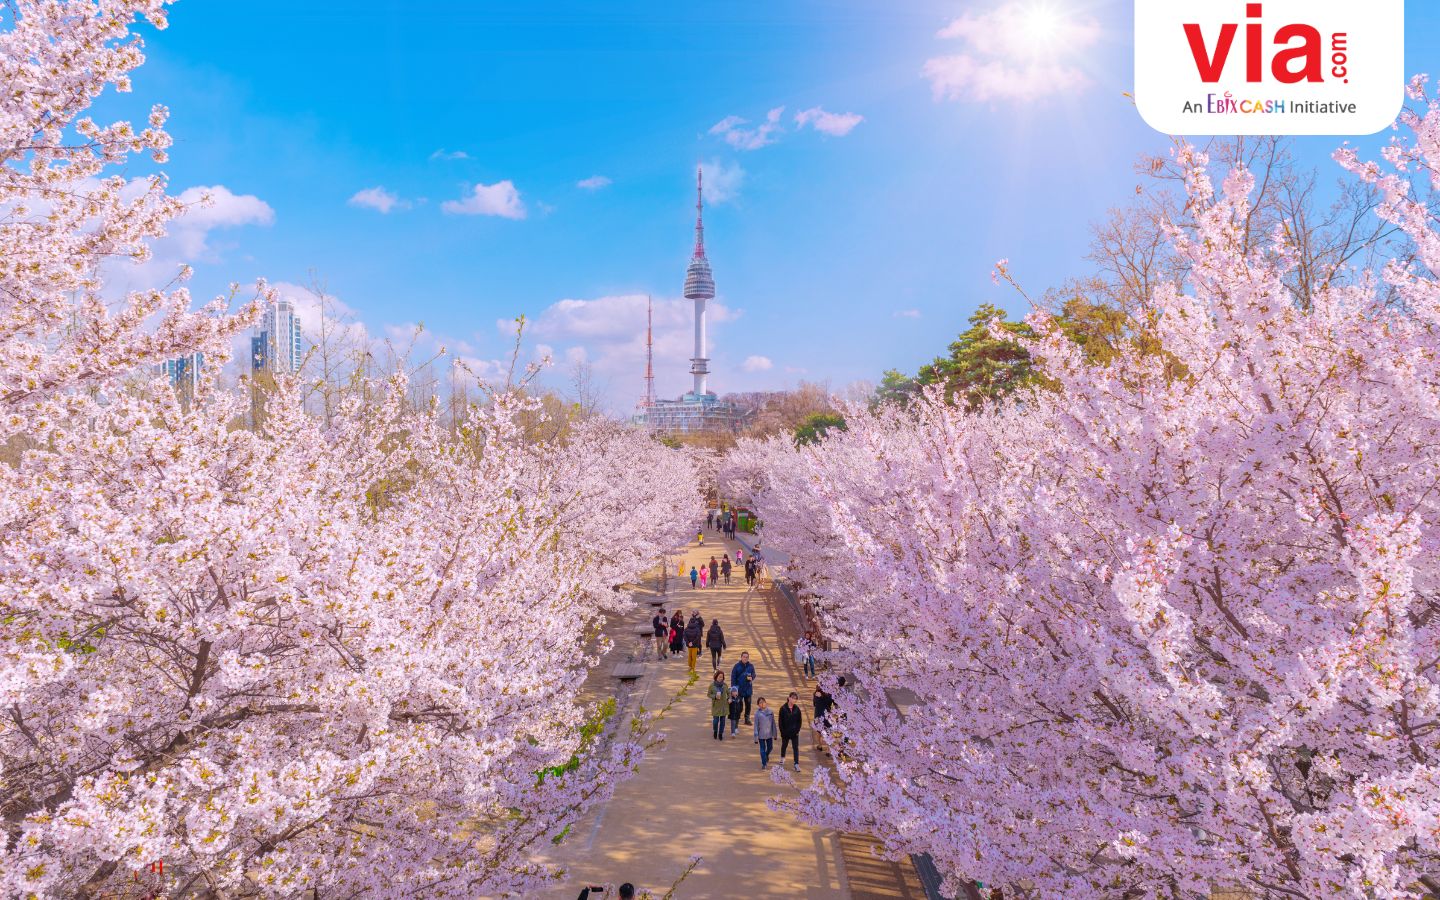 Sambut Keindahan Musim Semi di Korea Selatan: 5 Destinasi Rekomendasi